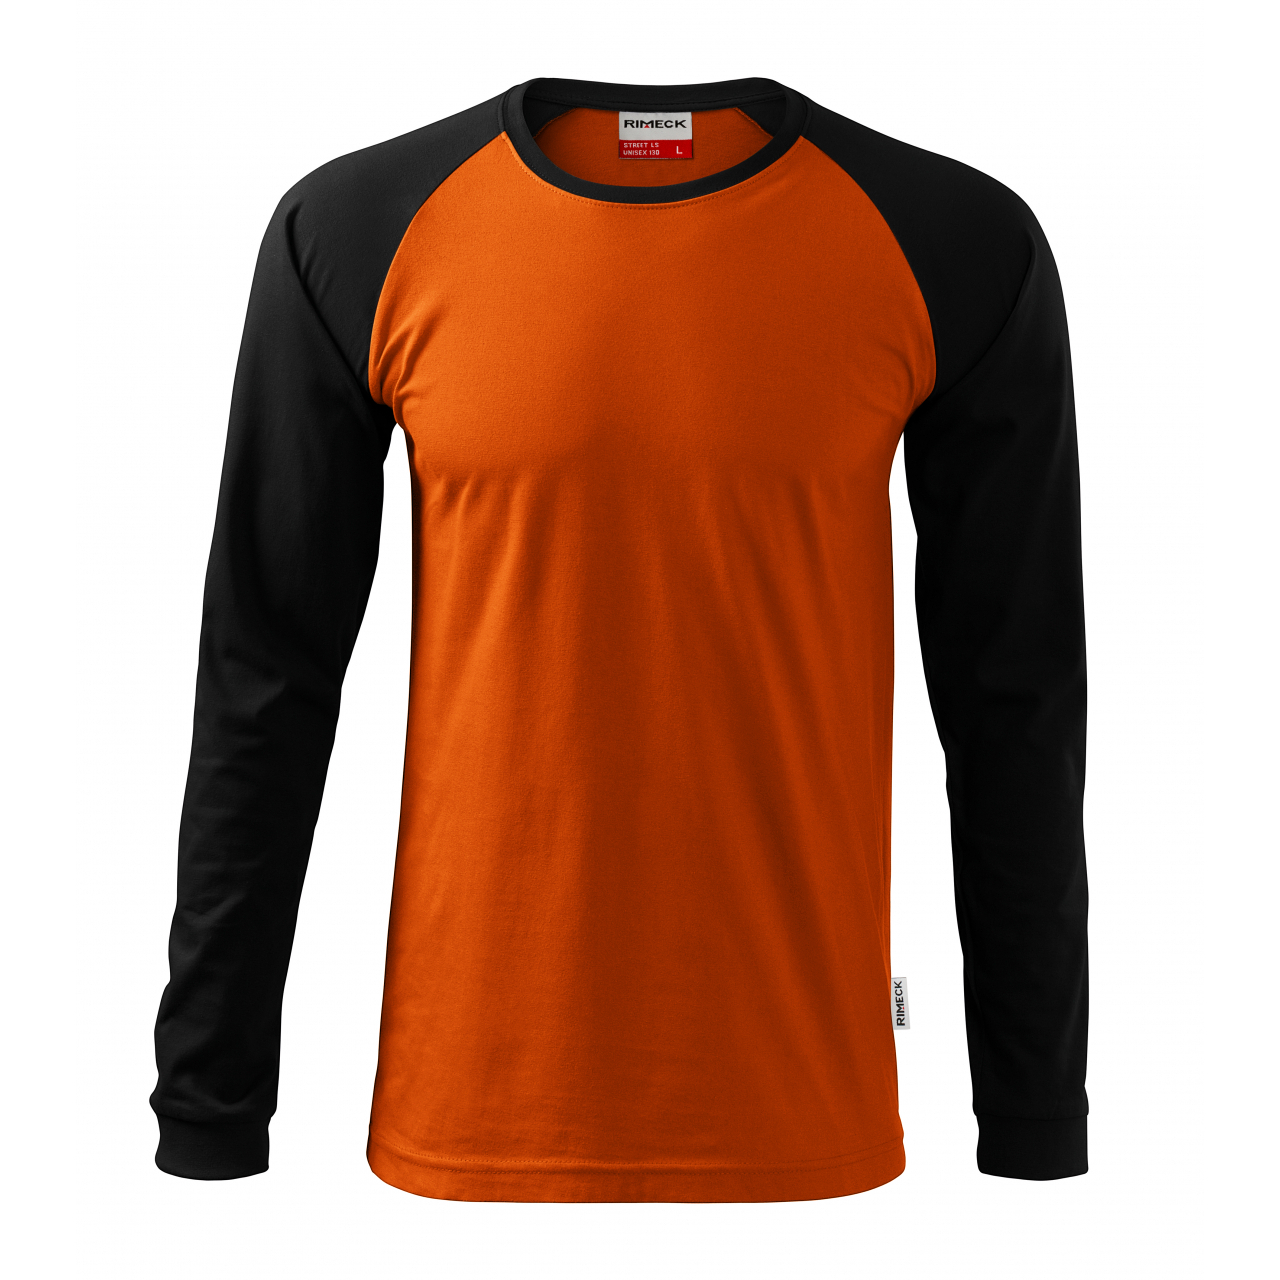 Tričko unisex Rimeck Street Long Sleeve - oranžové-černé, L